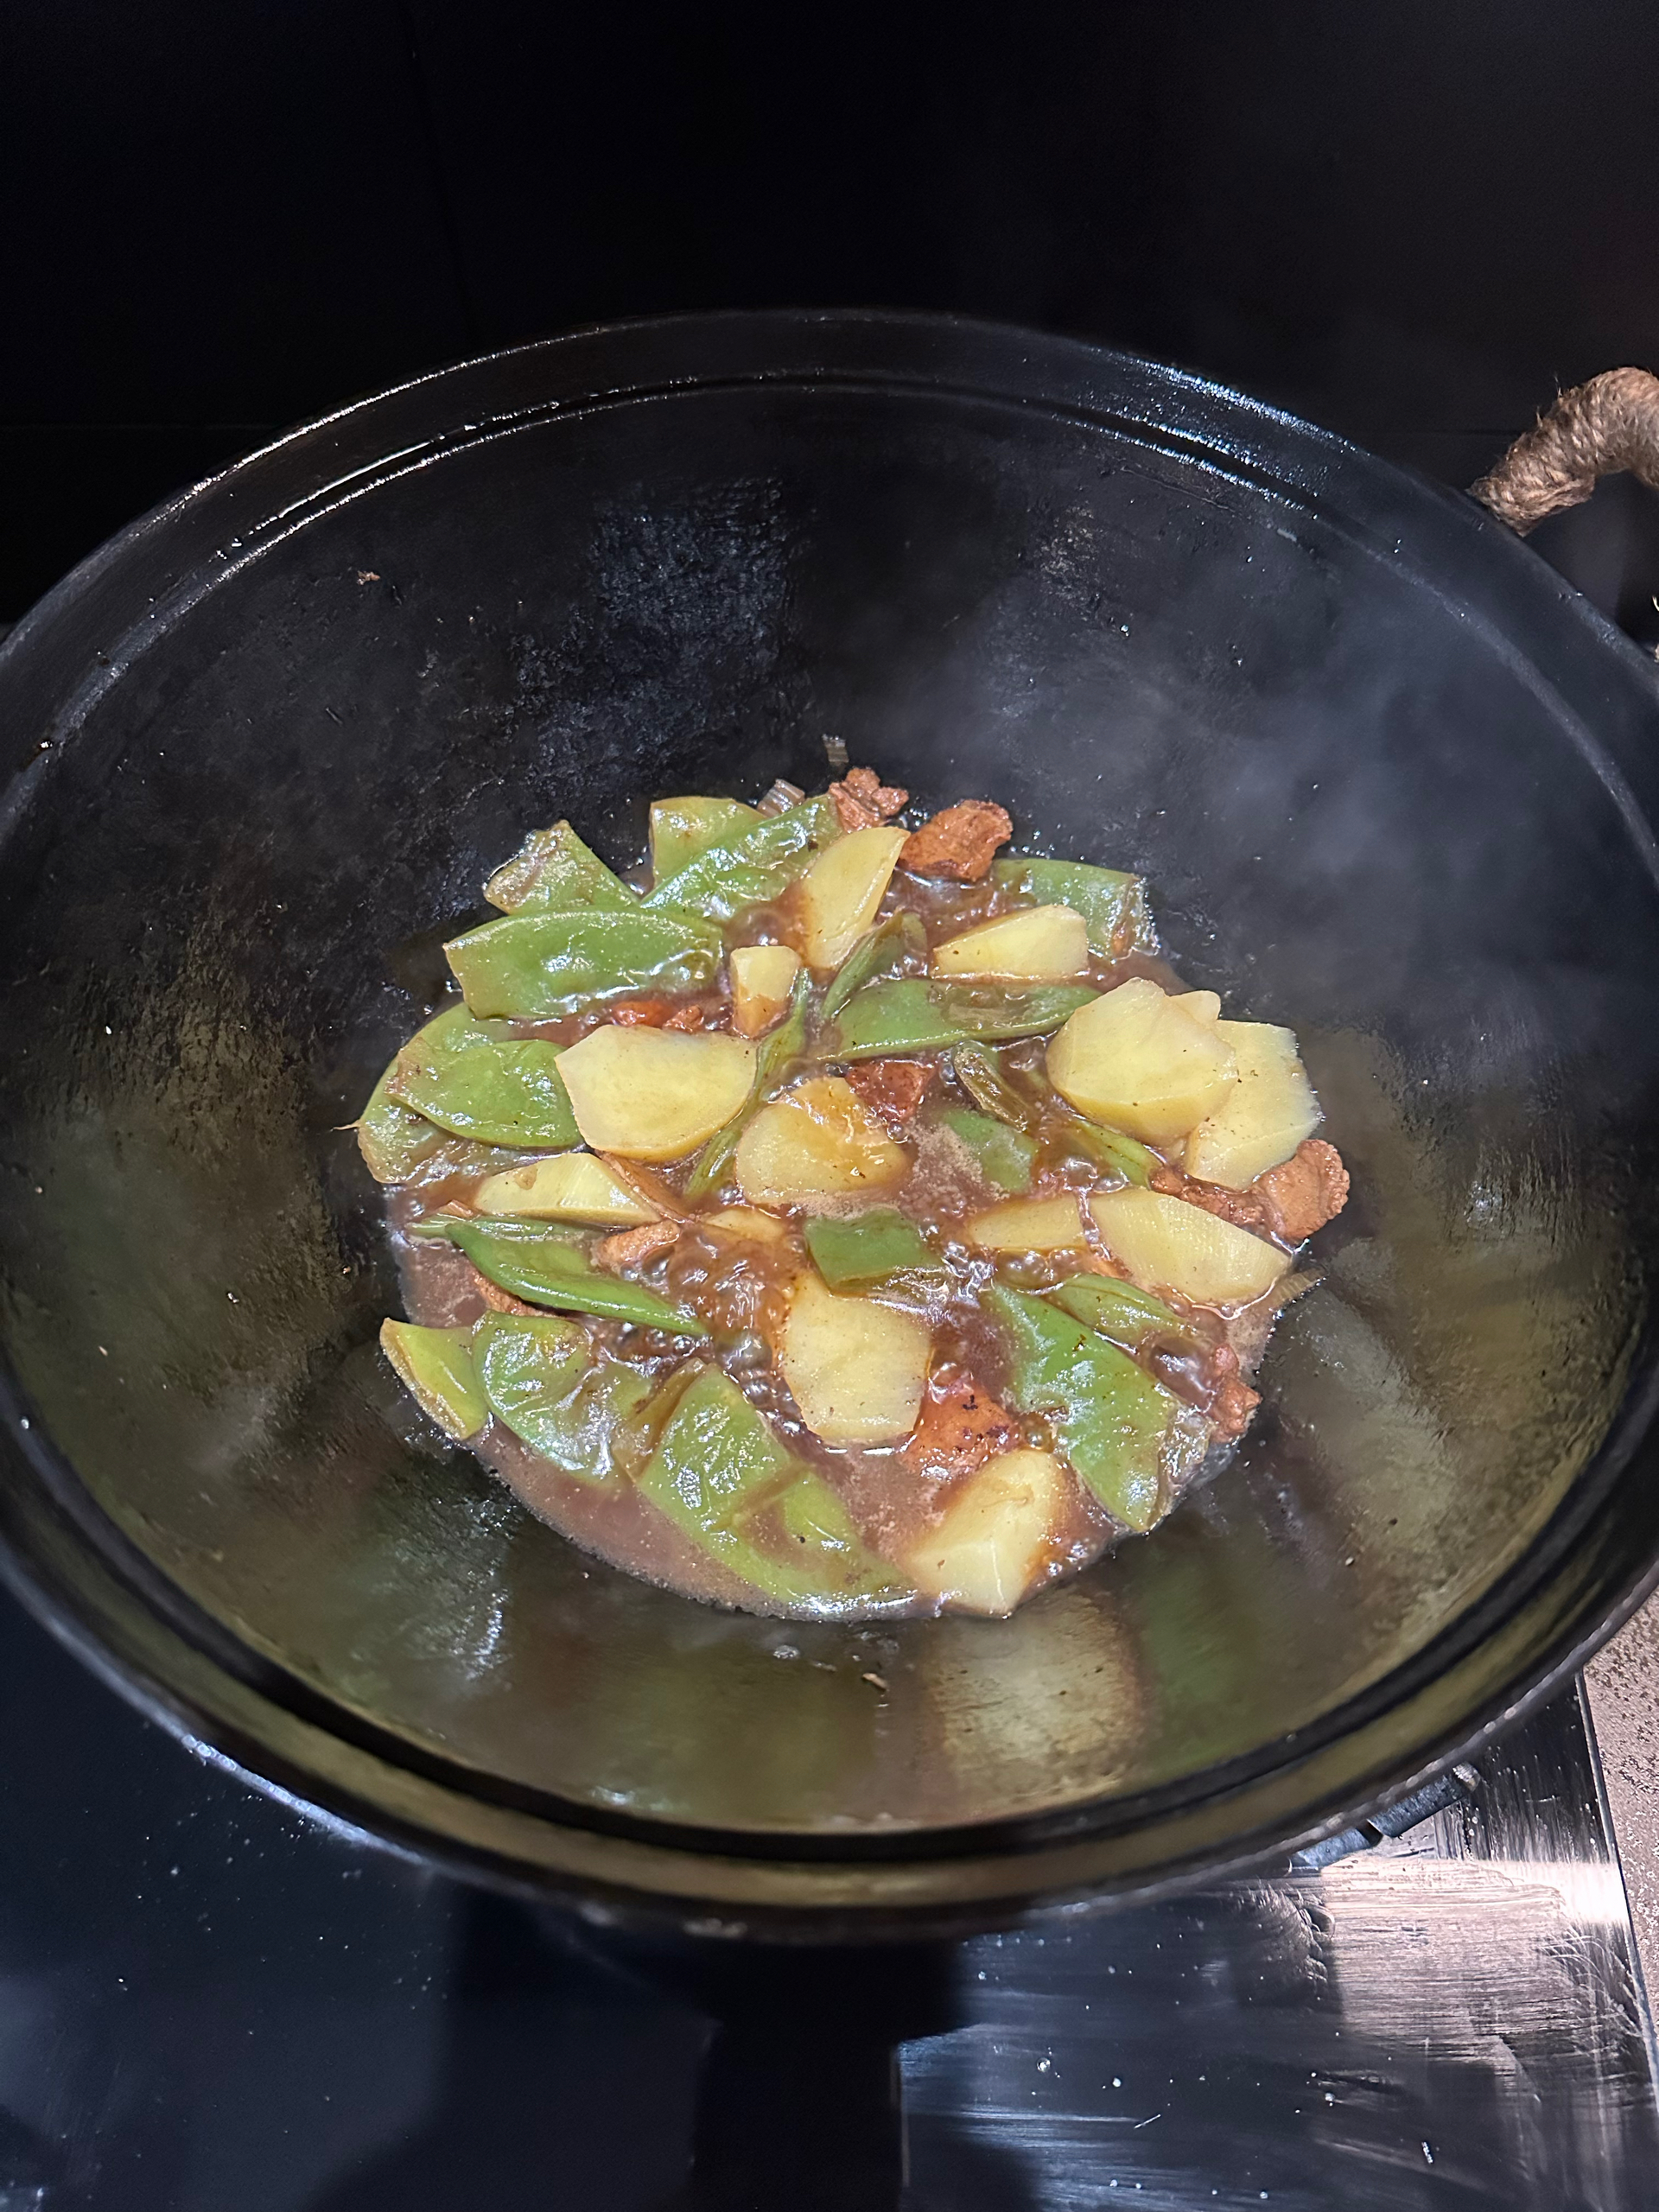 铁锅炖土豆扁豆的做法